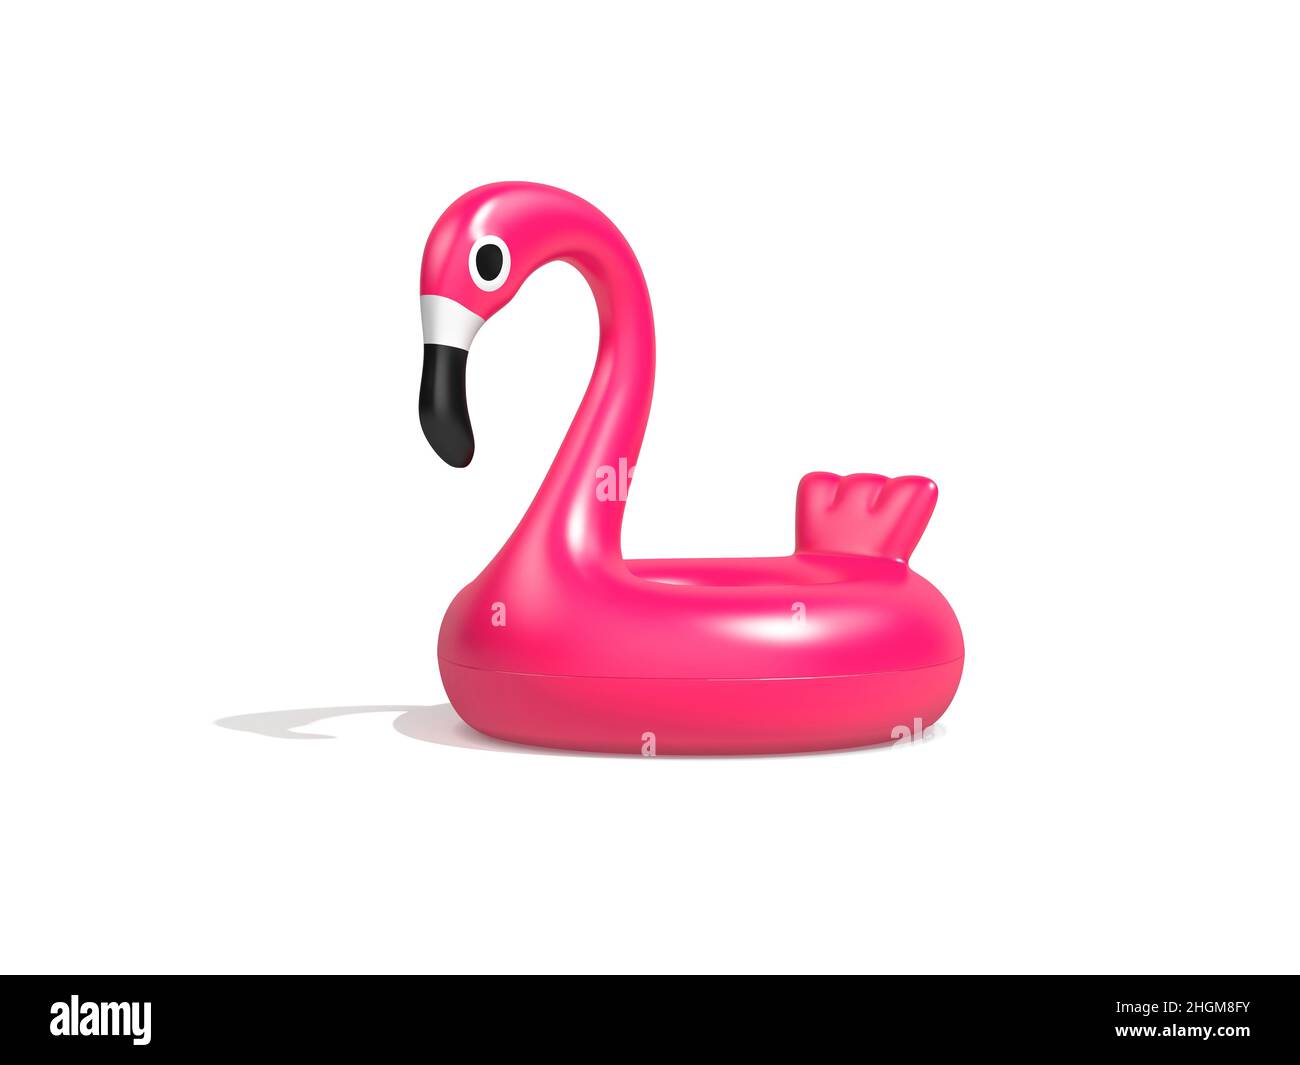 Pink flamingo, illustration Stock Photo